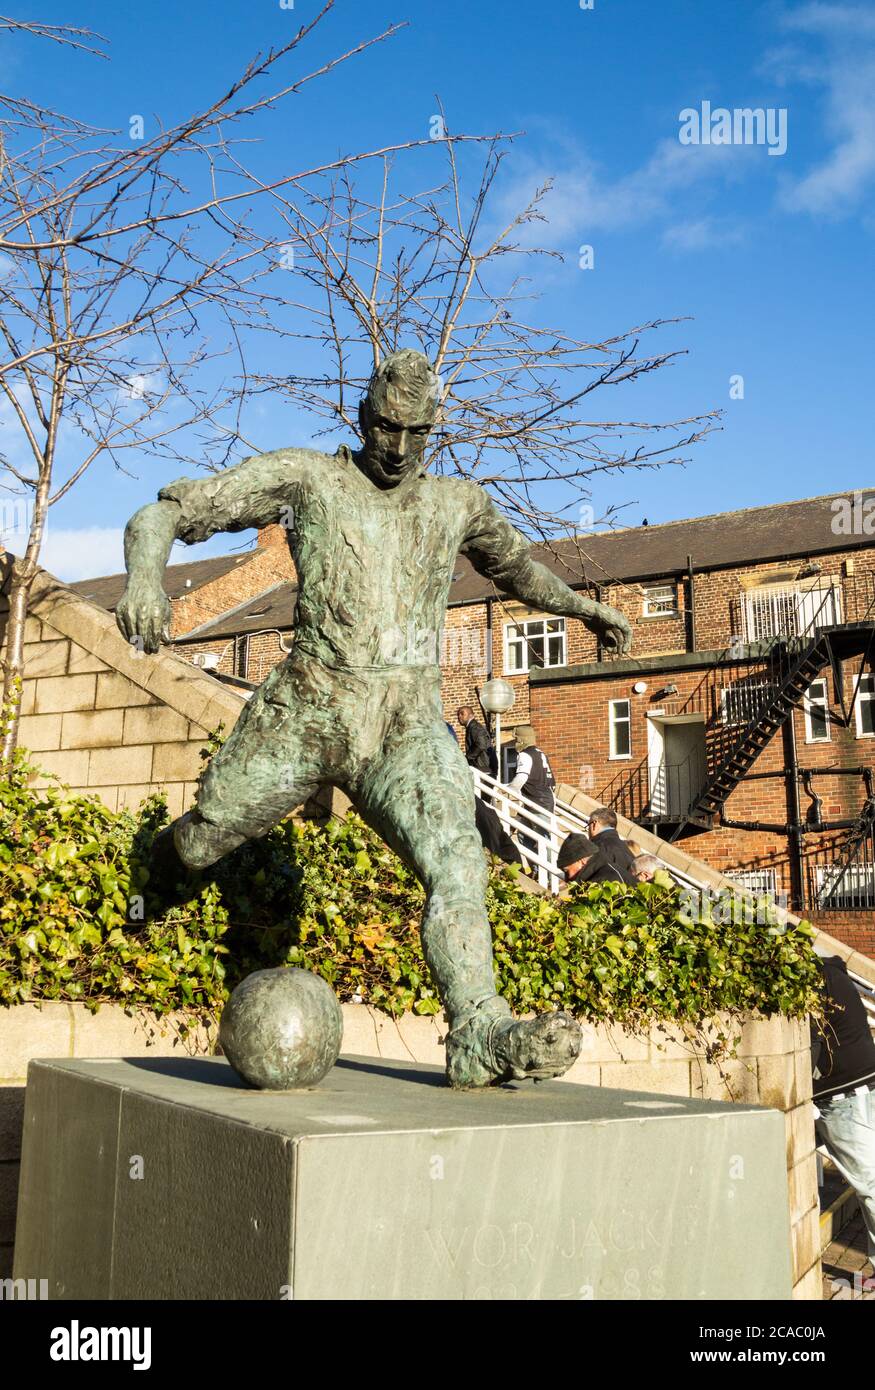 Statue de la légende du football de Newcastle, Jackie Milburn, « Wor Jackie » (Our Jackie) à Newcastle upon Tyne, Angleterre, Royaume-Uni Banque D'Images